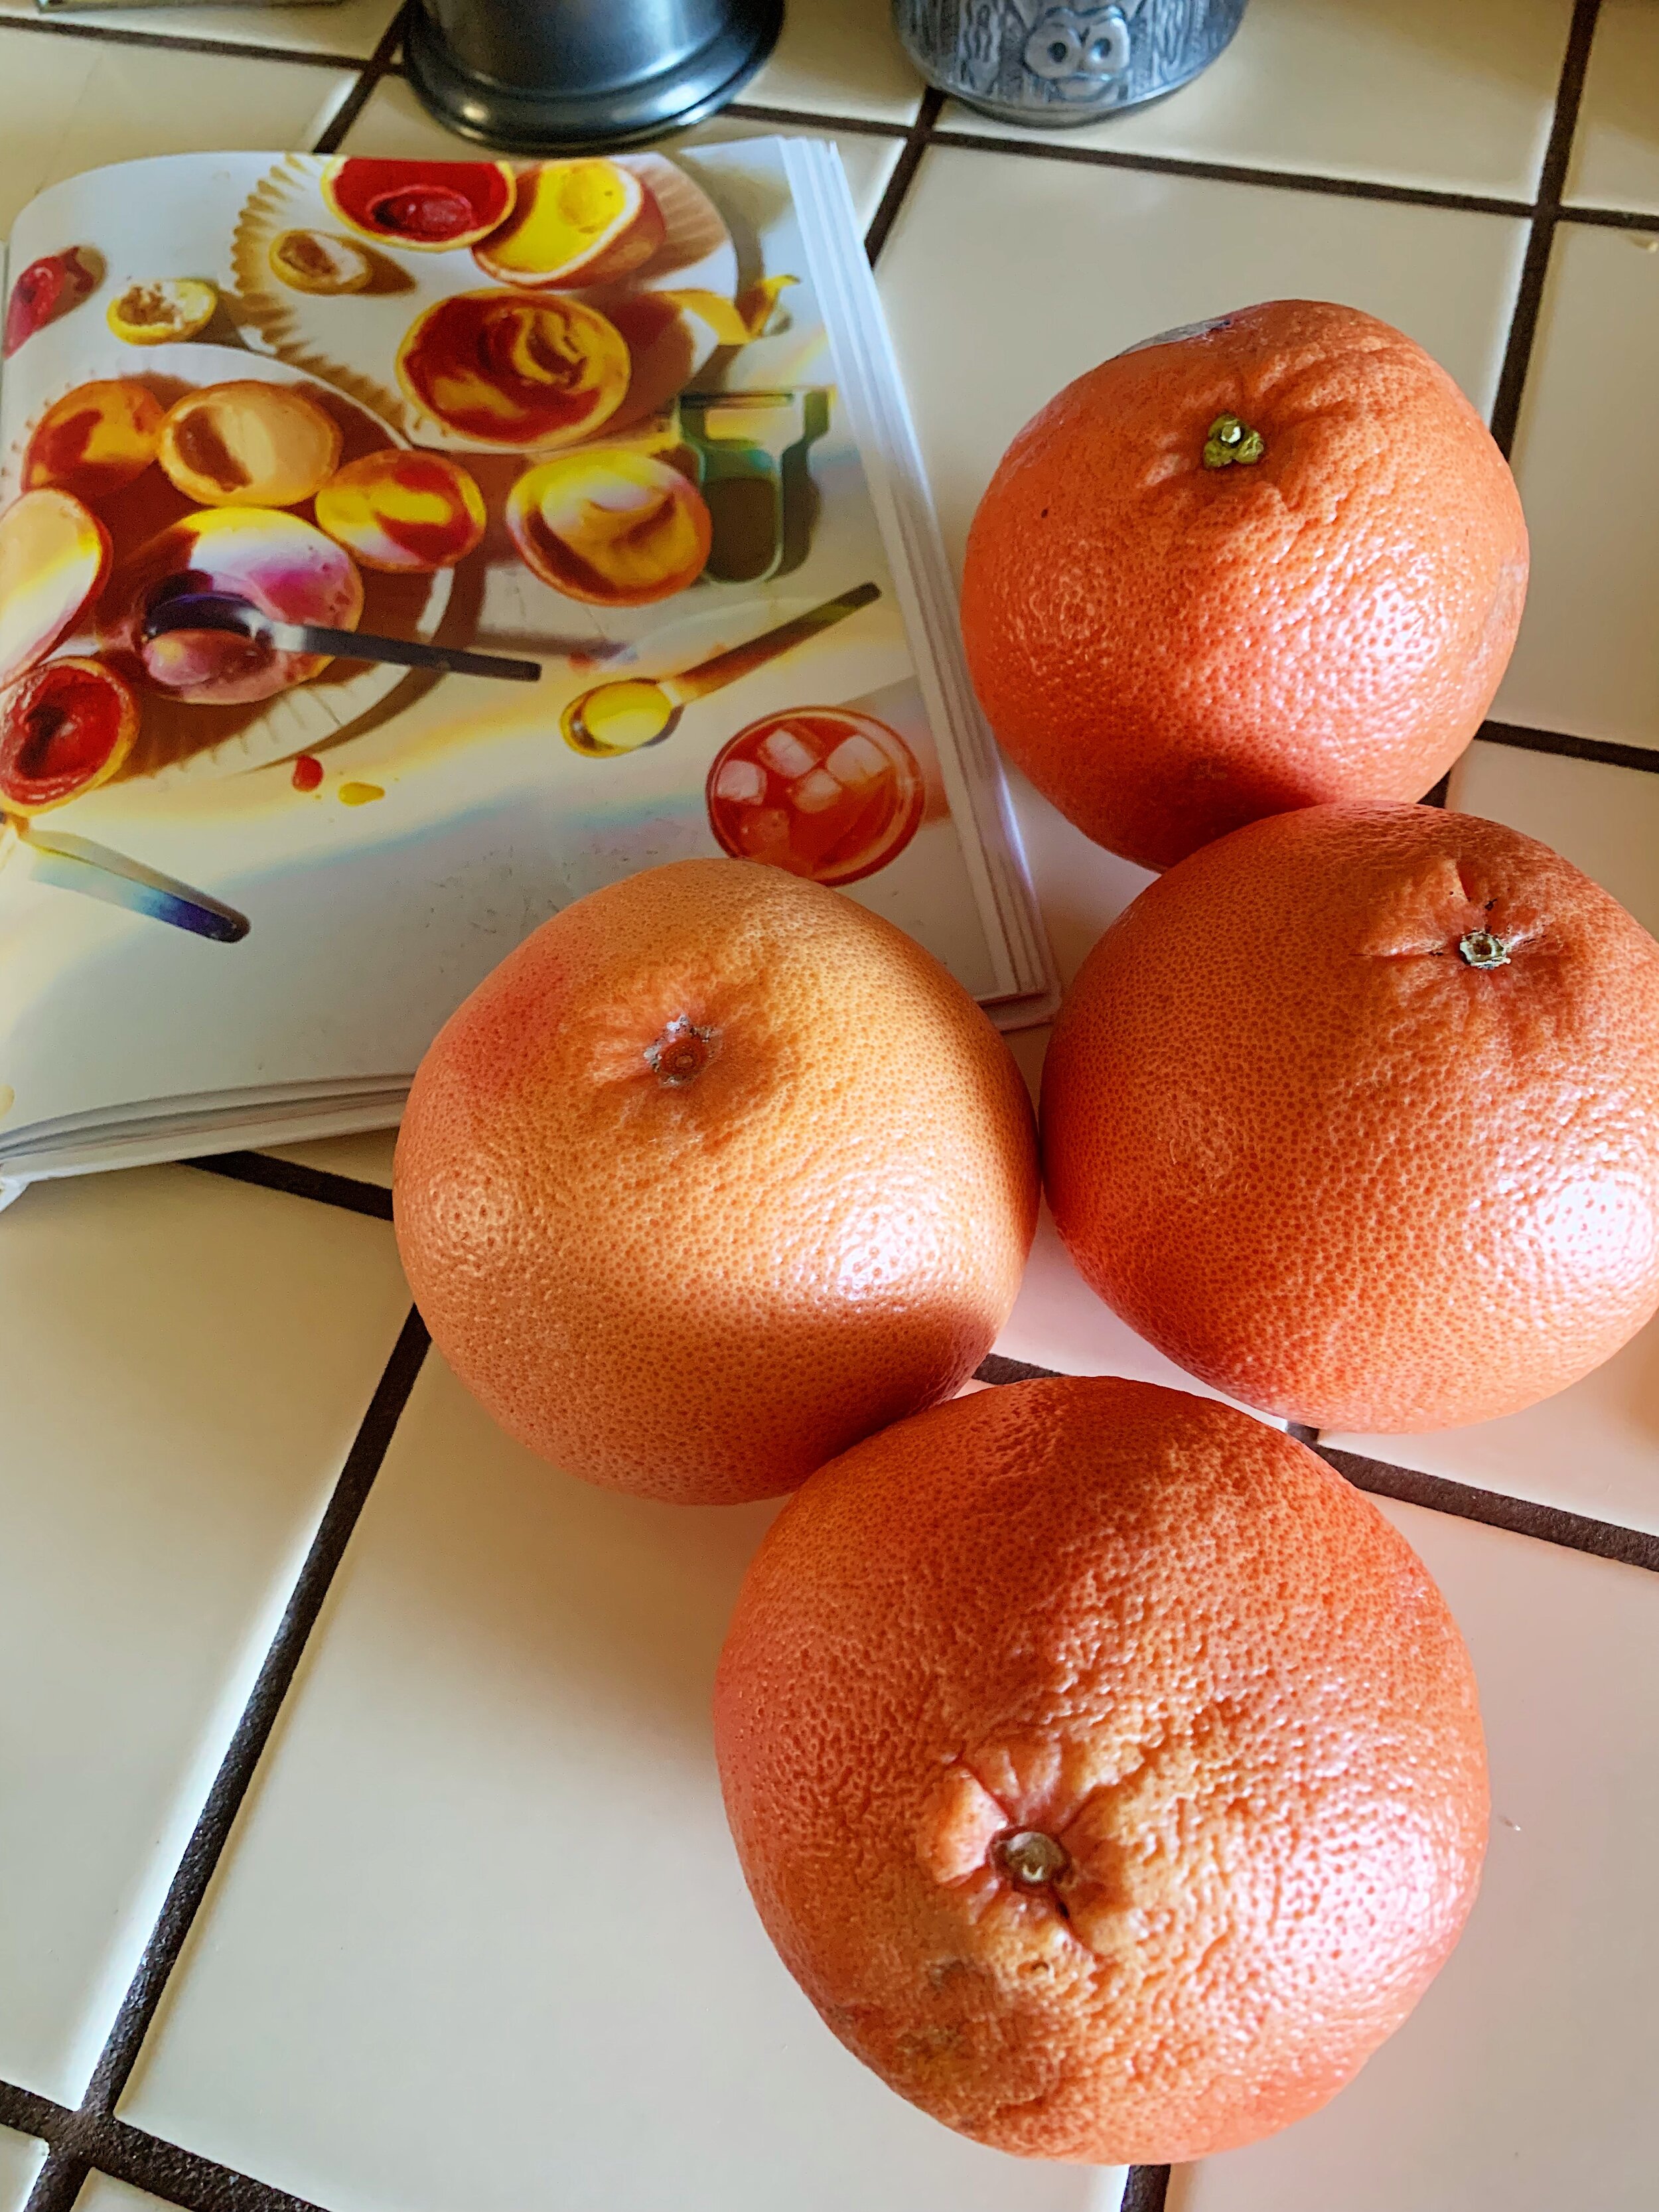 sorbet-in-grapefruit-cups-alison-roman-1.jpg